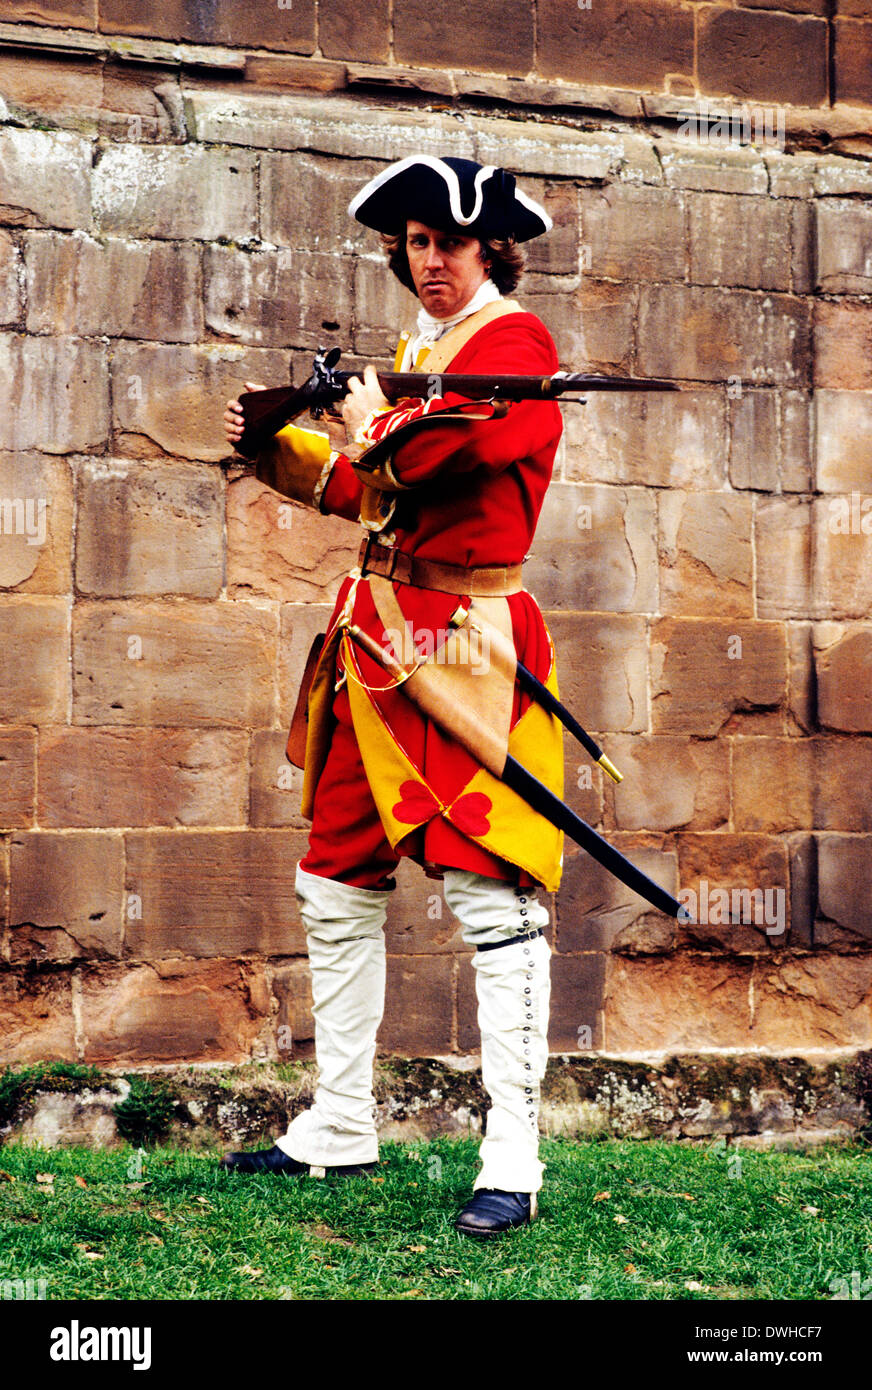 Pulteney Regiment, 13. Fuß, 1745, englische britische Soldat mit Muskete, feste Bajonett Bajonette Musketen, wie an Schlacht von Culloden, Reenactment, England-britische Soldaten eingesetzt Stockfoto